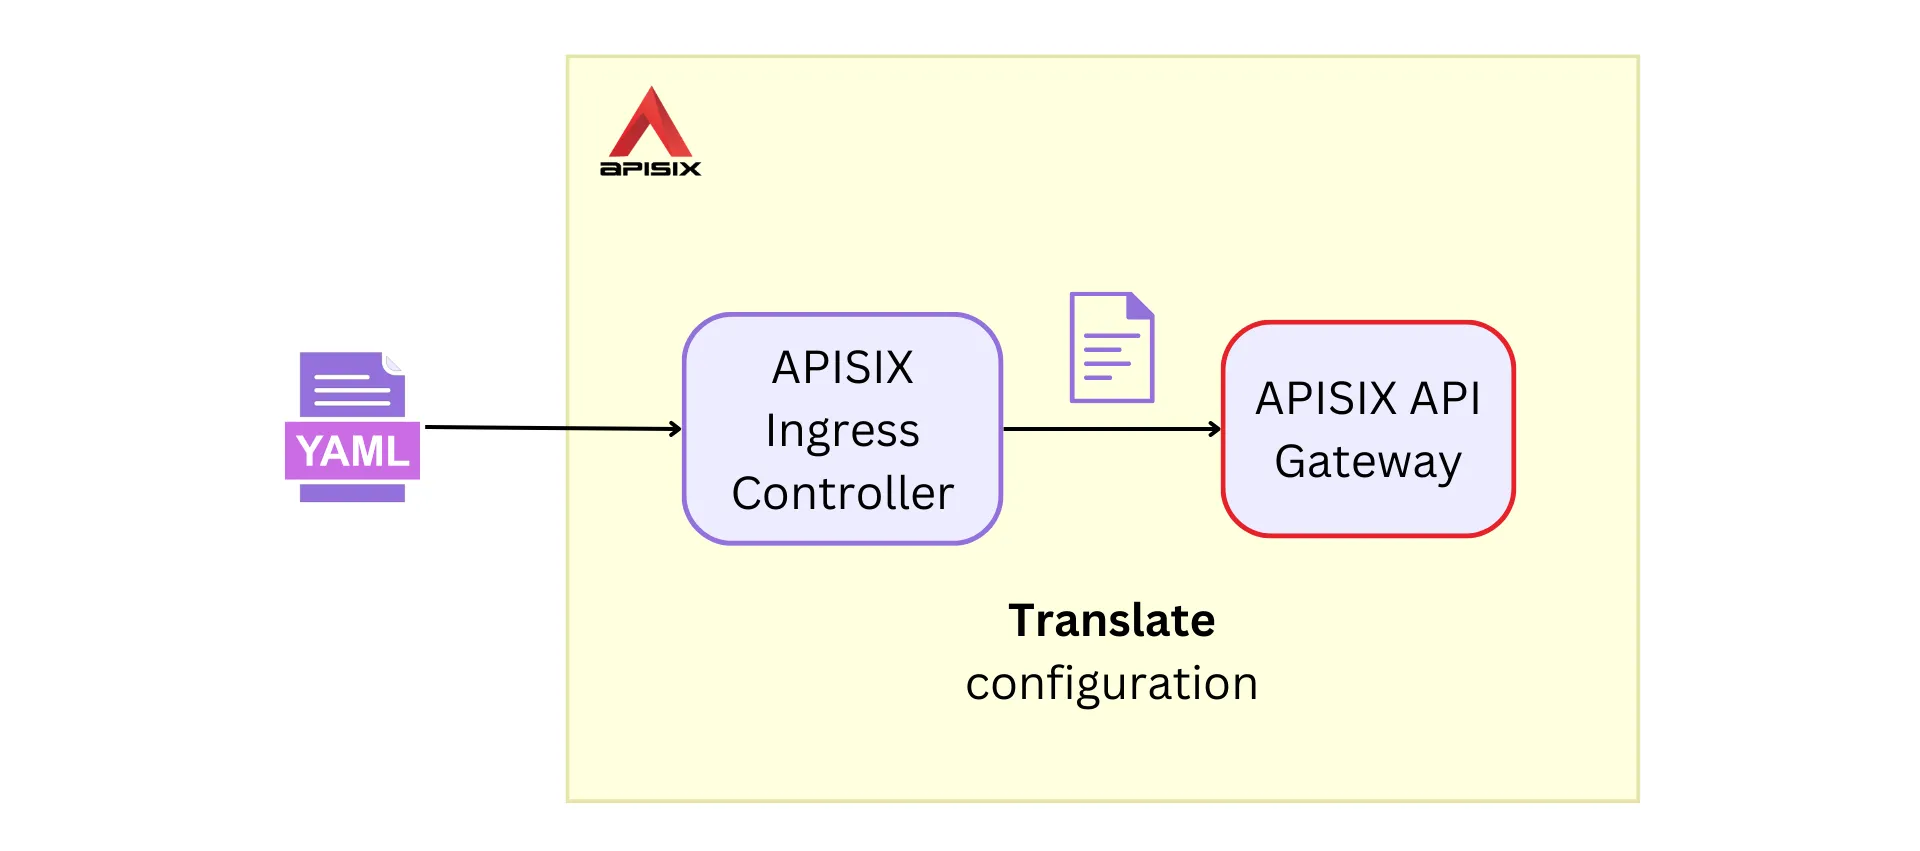 APISIX Ingress controller translates configuration